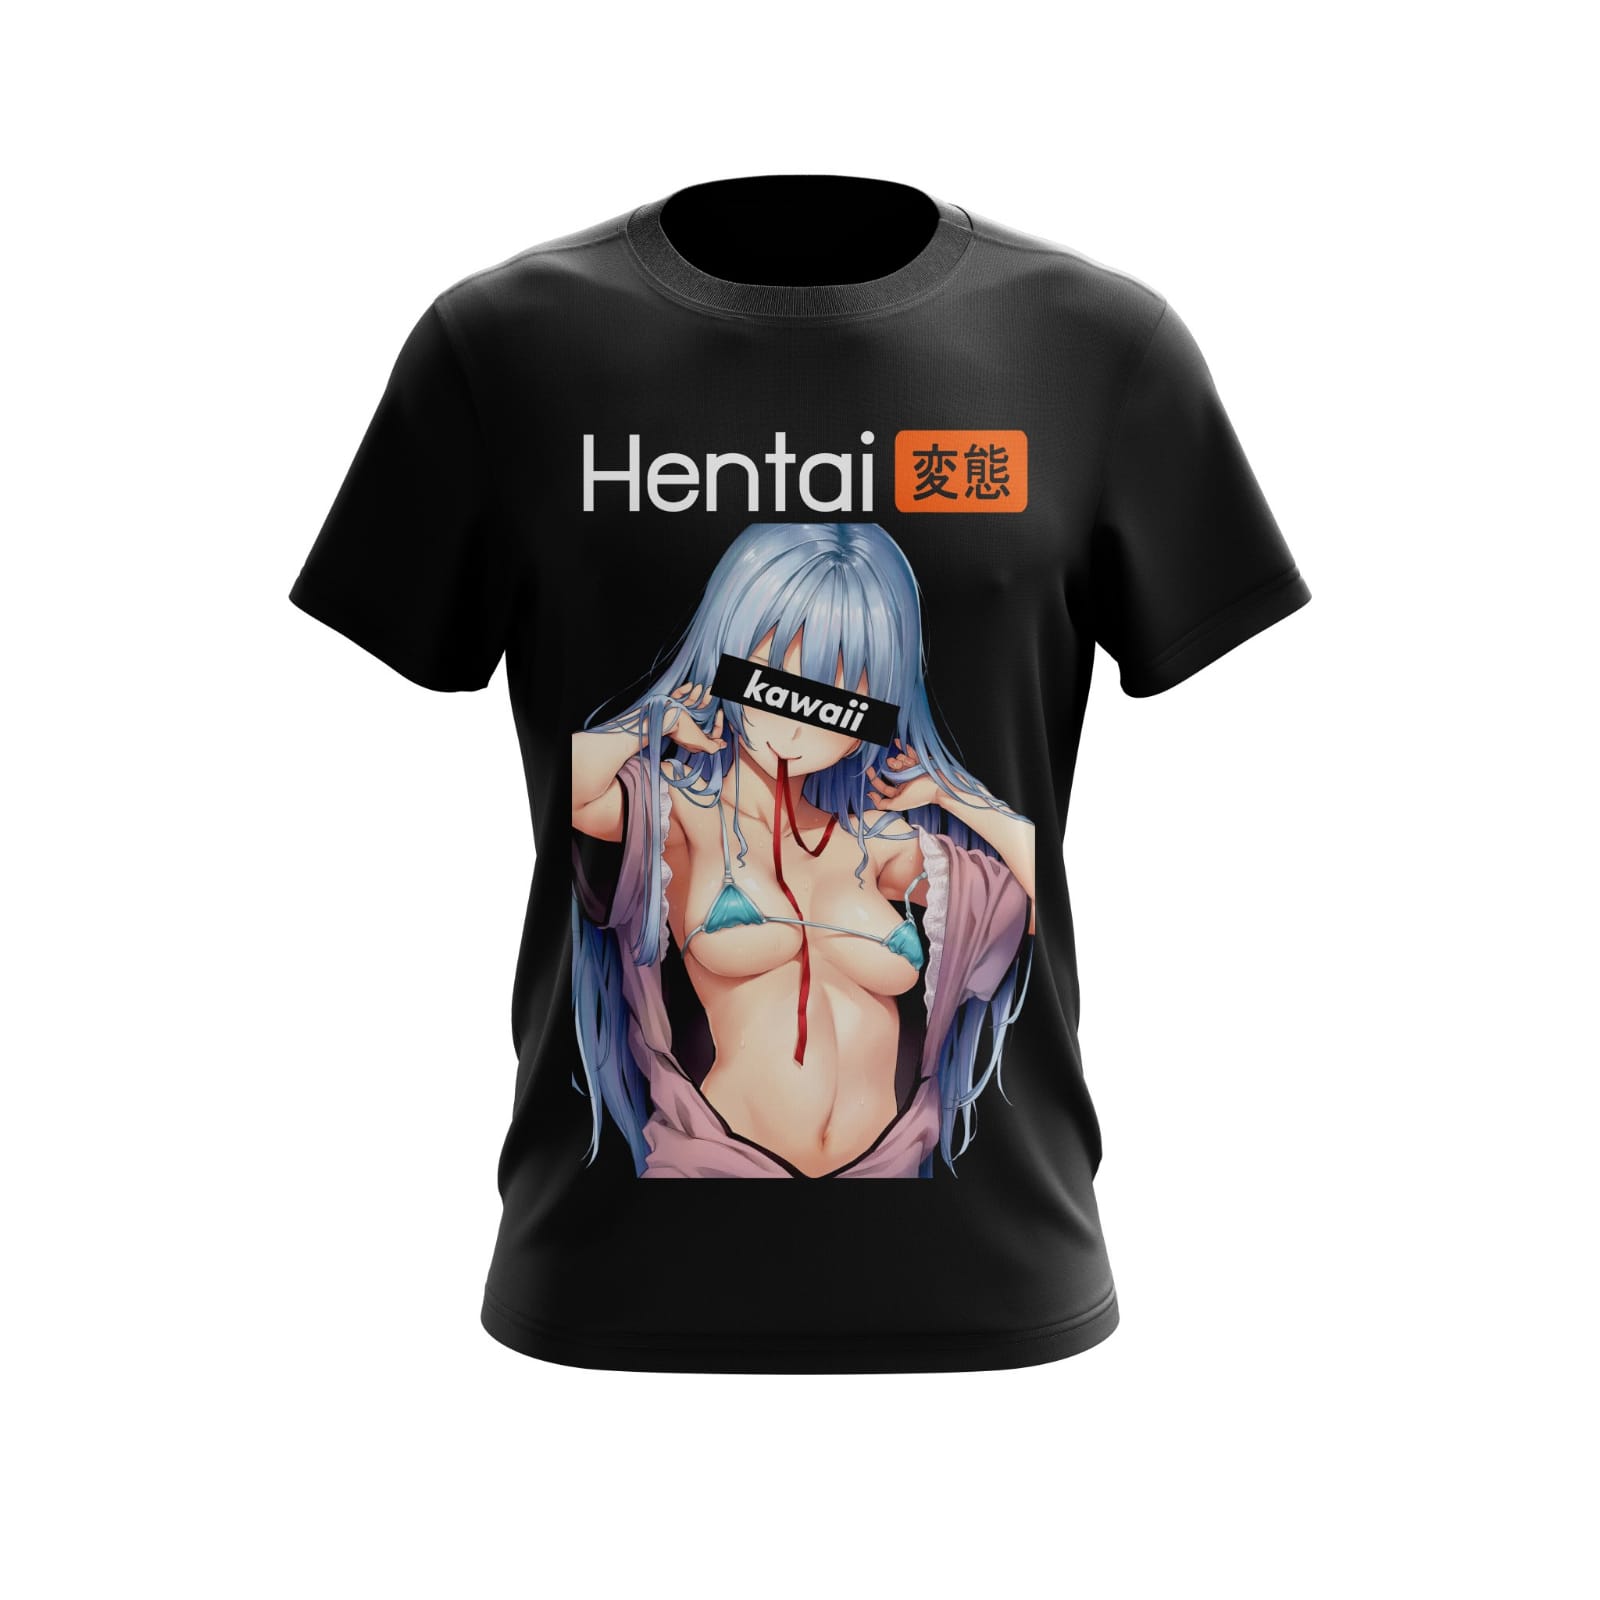 Hentai t shirt